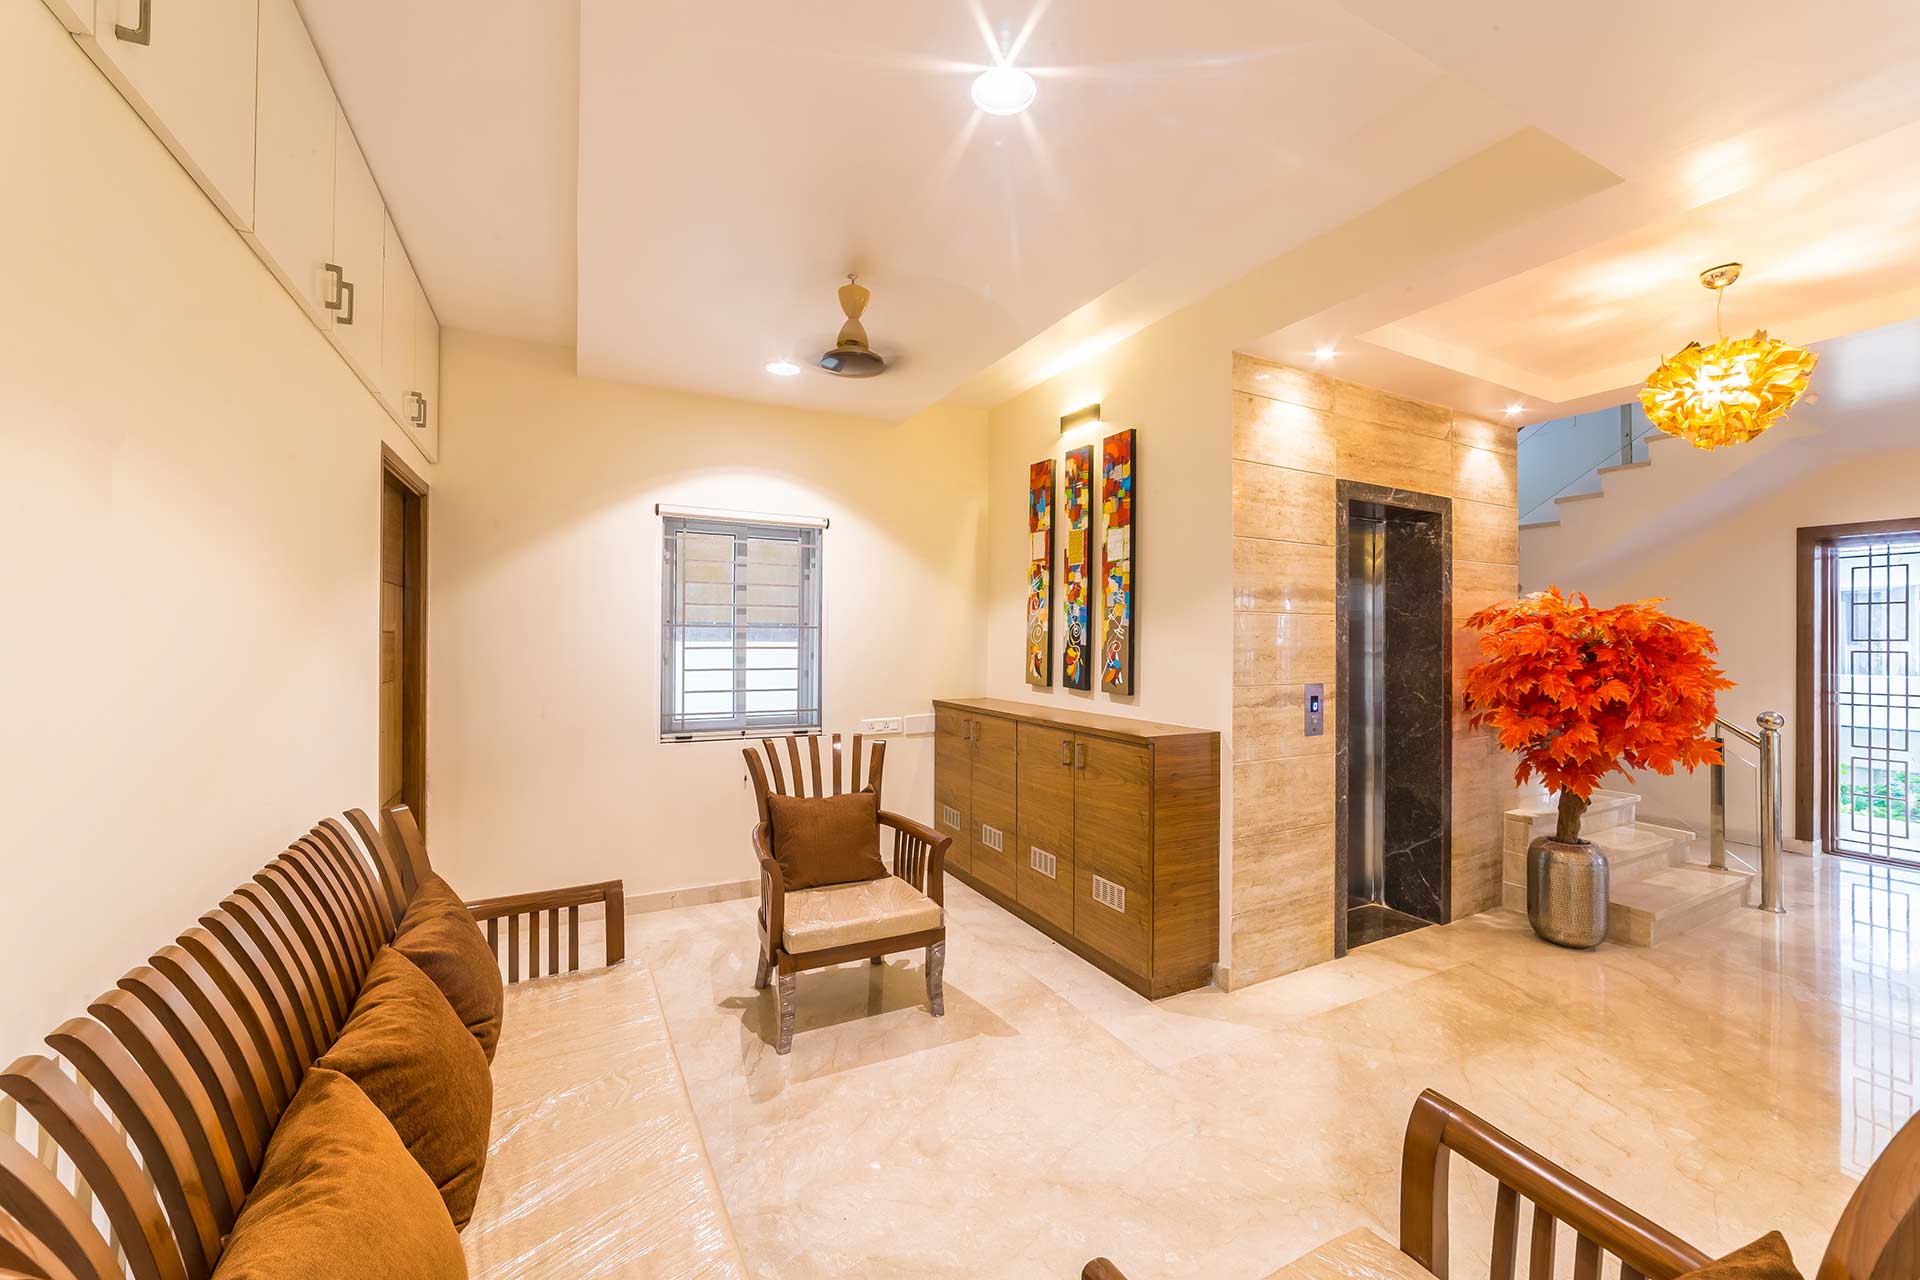 Villa Interior Design in Coimbatore, Leading Interior Designers in Coimbatore